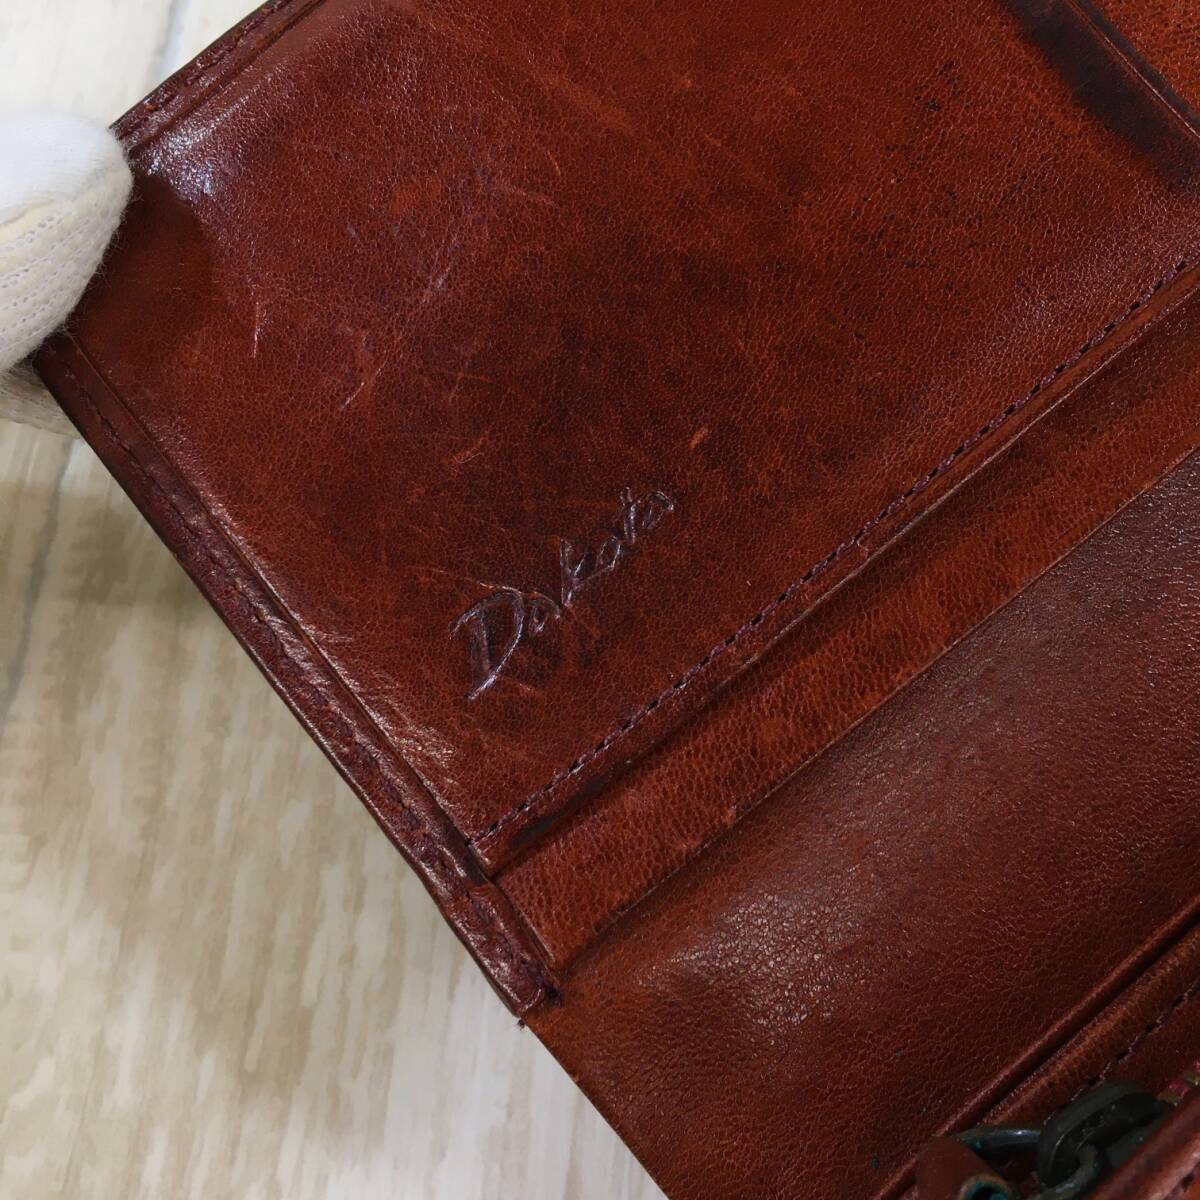 NZH1501●Dakota レザー メッシュ 2つ折り 財布●赤茶色系 ダコタの画像10